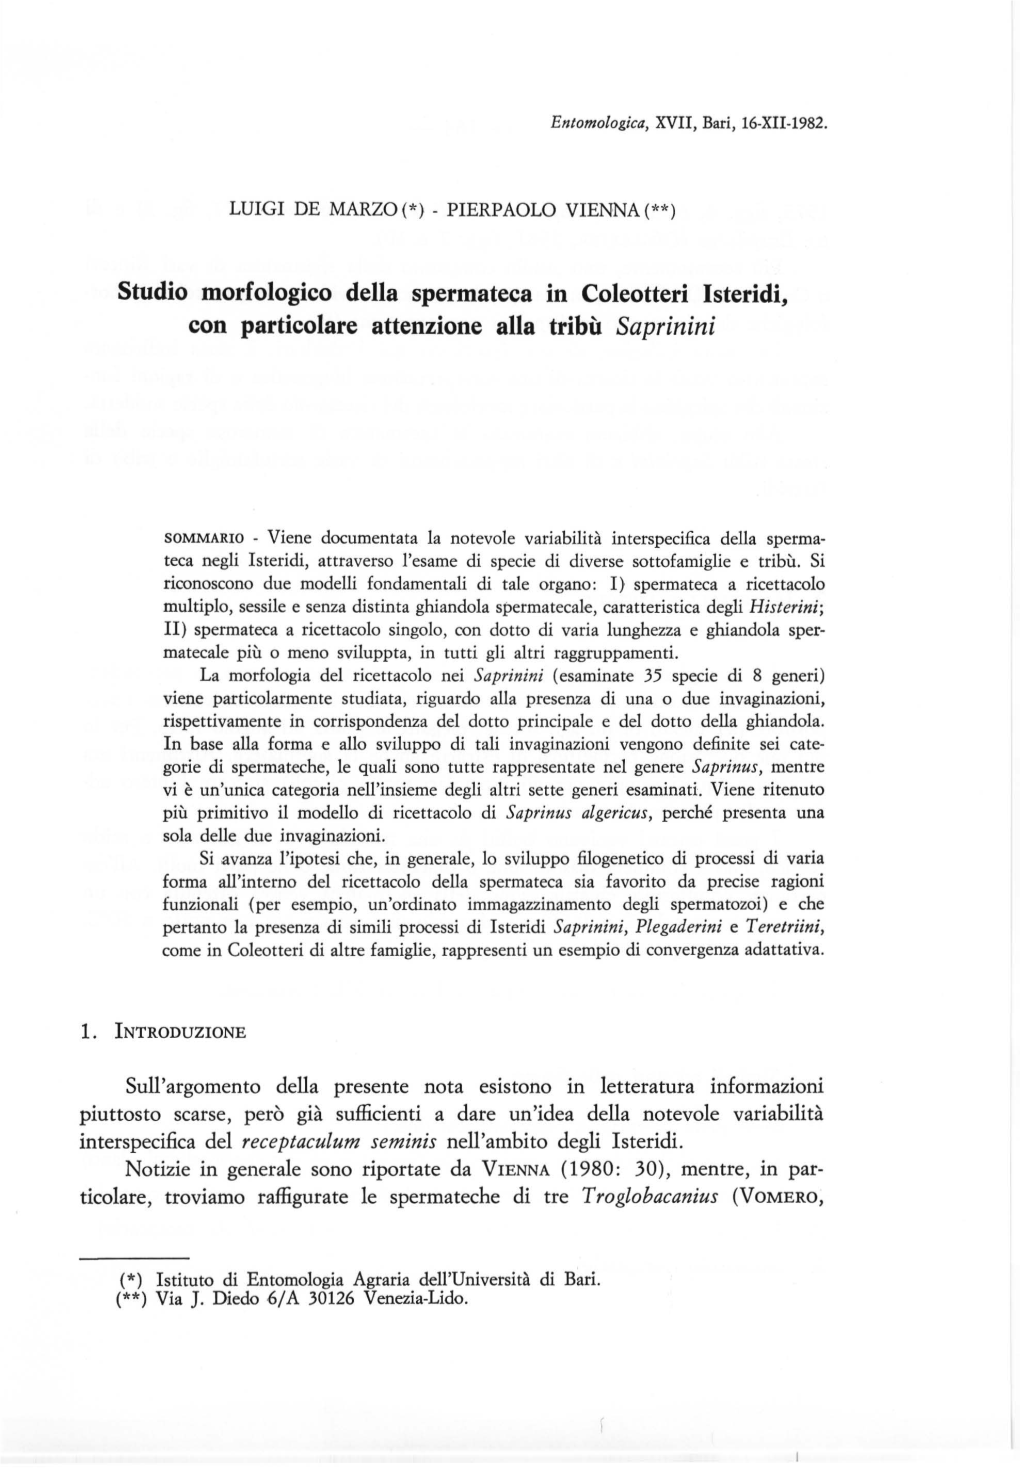 Studio Morfologico Della Spermateca in Coleotteri Isteridi, Con Particolare Attenzione Alla Tribù Saprinini